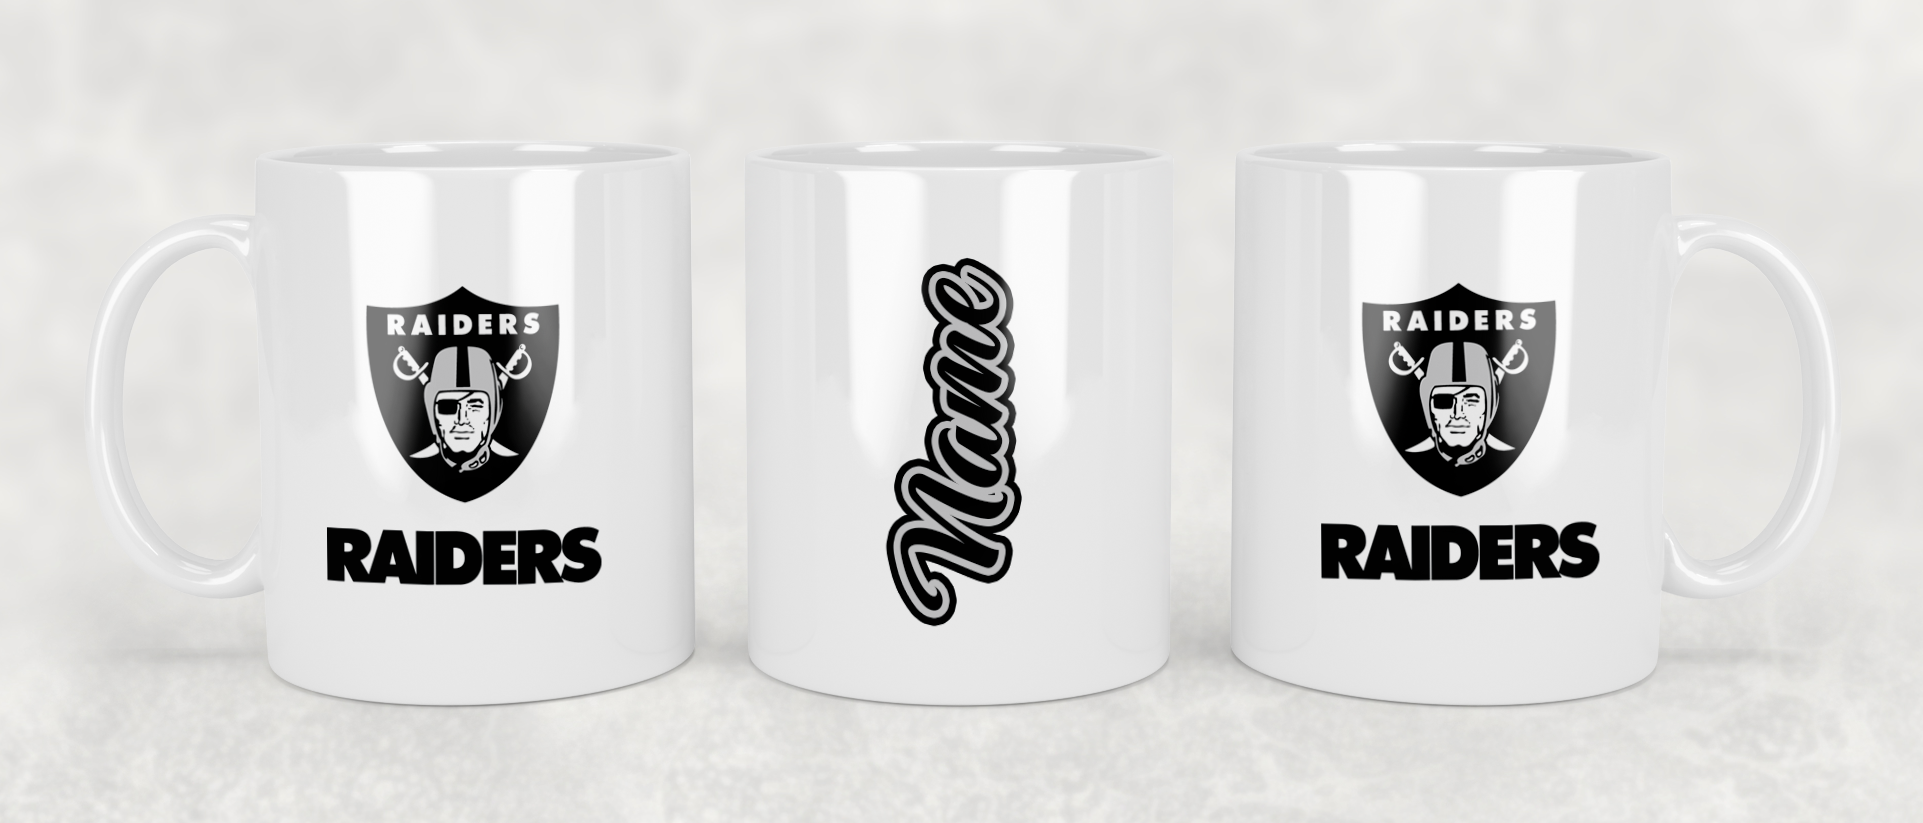 Las Vegas Raiders 15oz Coffee Mug